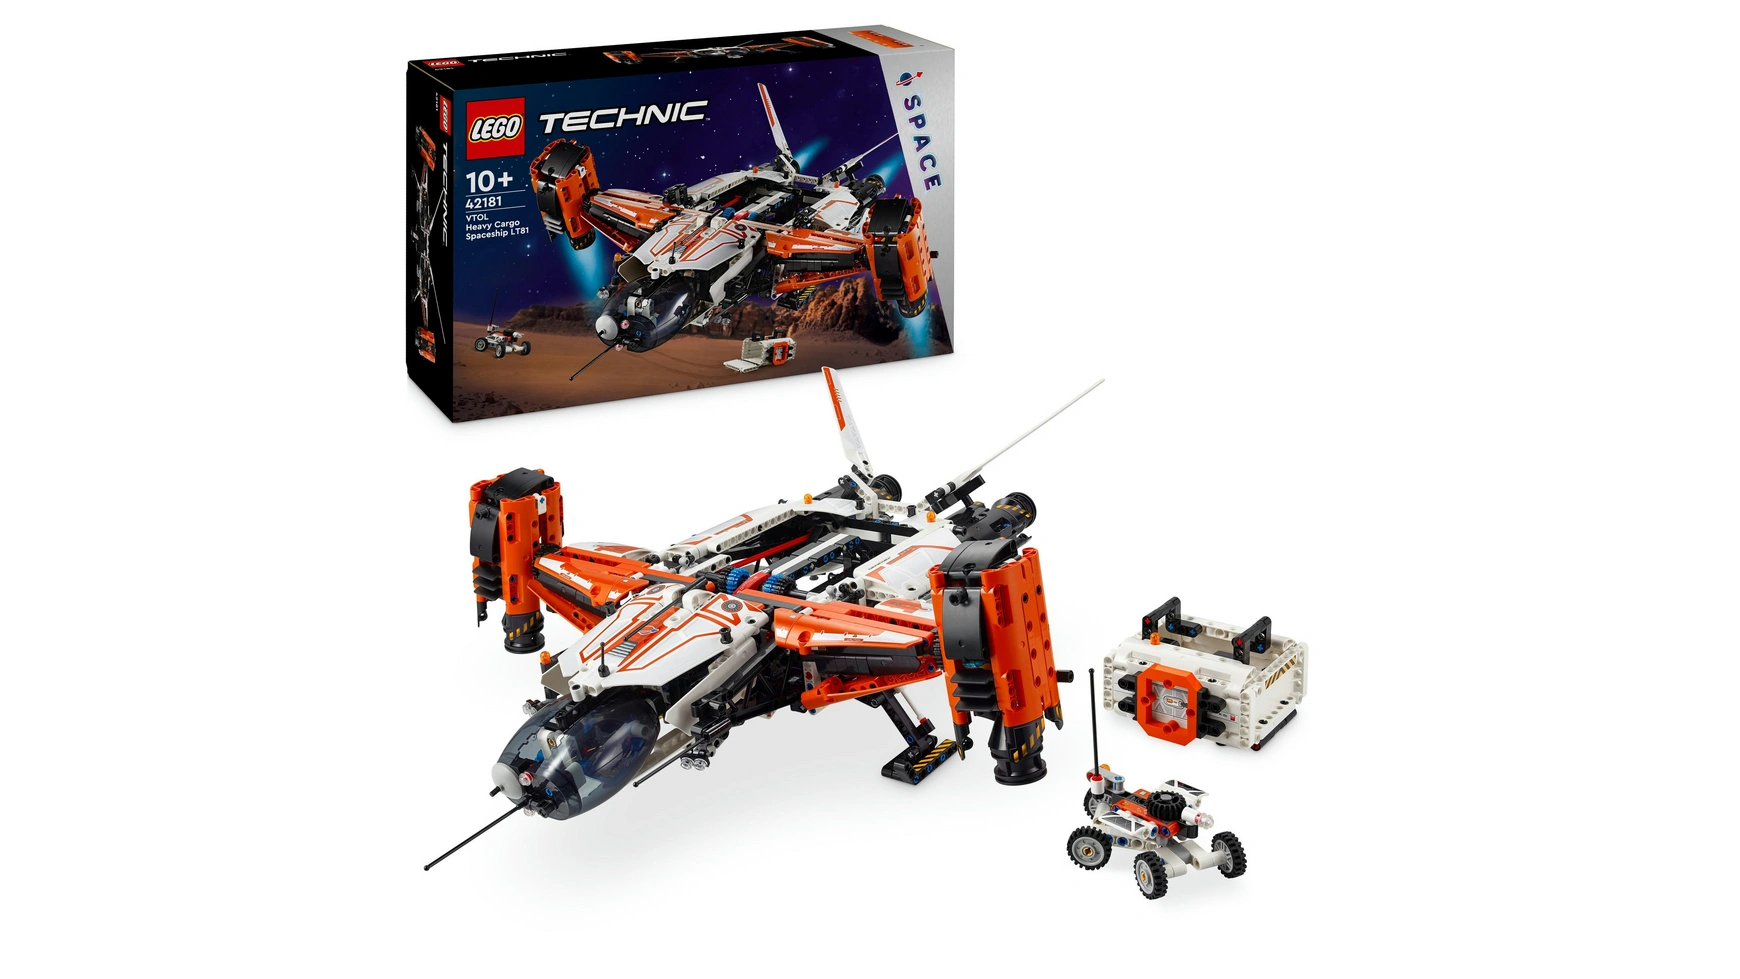 Lego Technic VTOL Heavy-Lift Space Freighter LT81, игровой набор с космическим самолетом игрушечные блоки динозавр насекомое для сборки детей